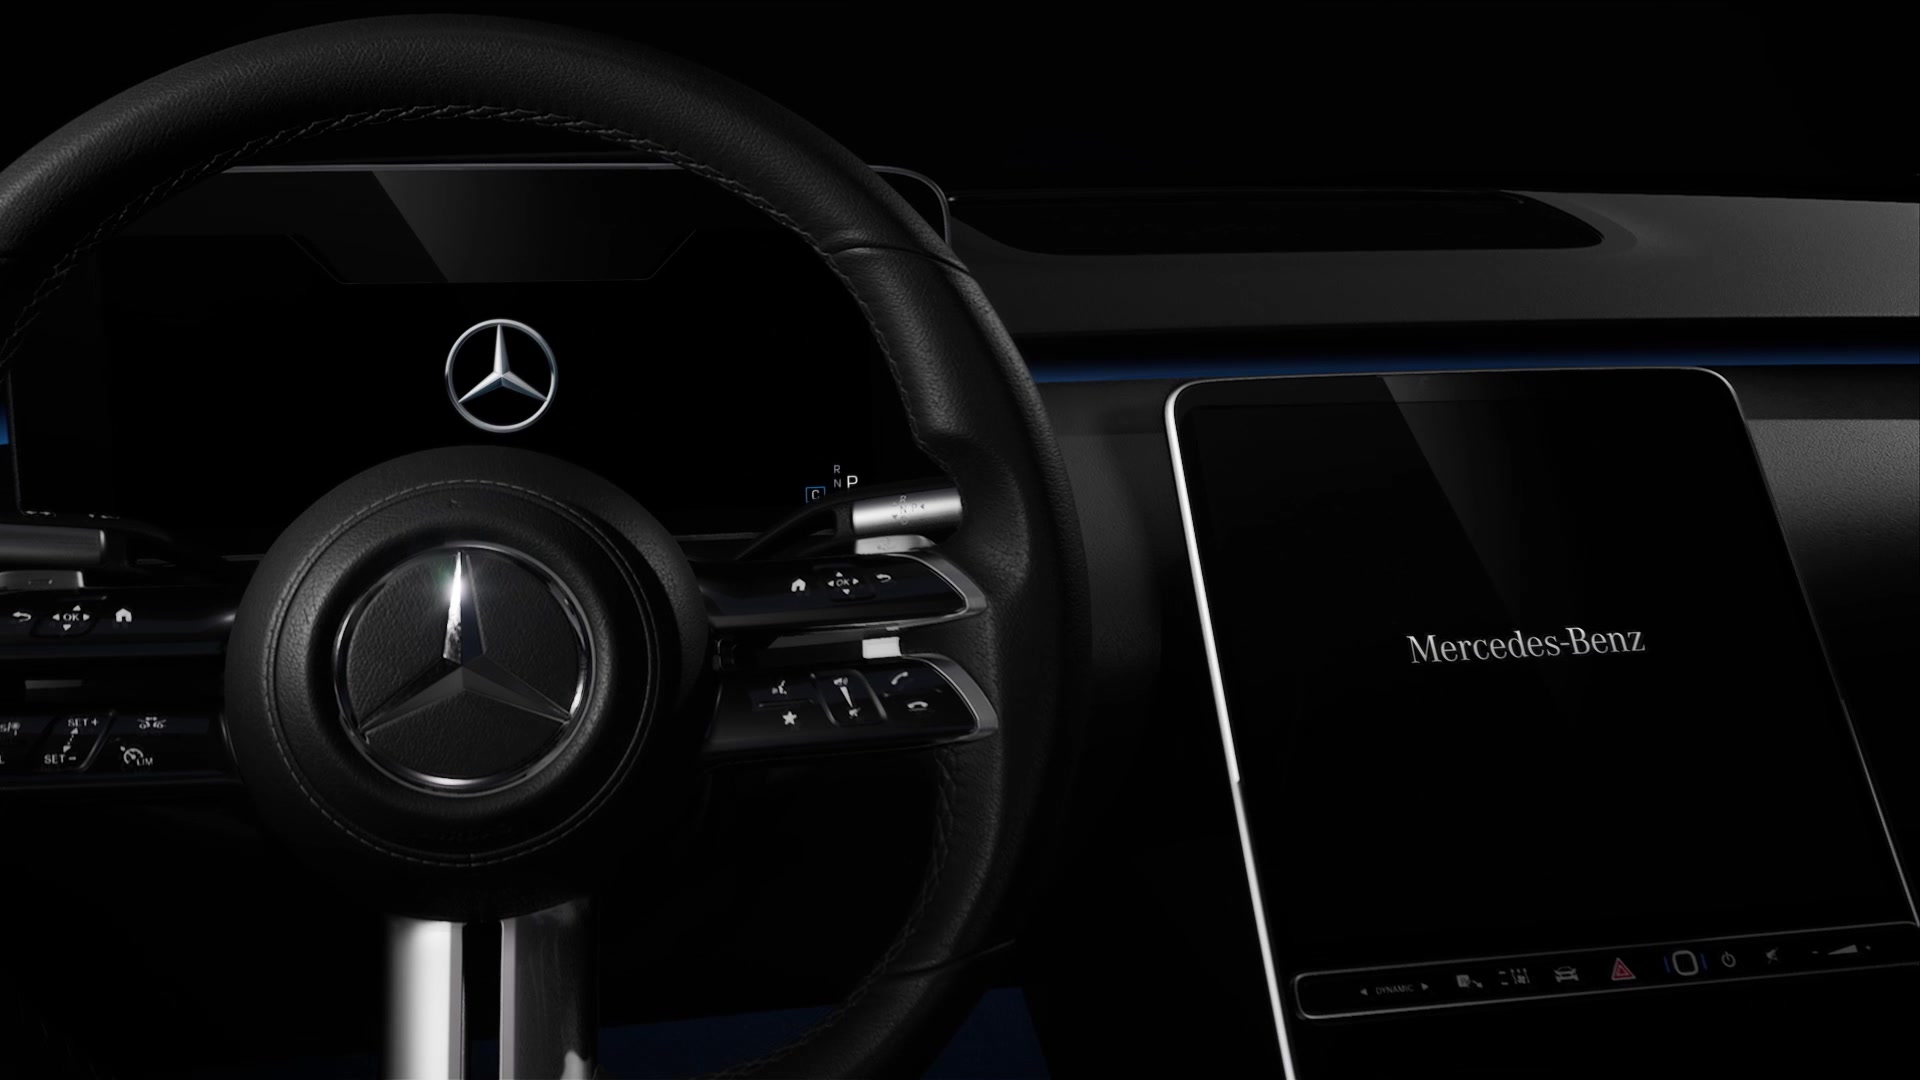 2020 Mercedes-Benz S-Serisi'nin iç mekanından ilk resmi görüntüler geldi